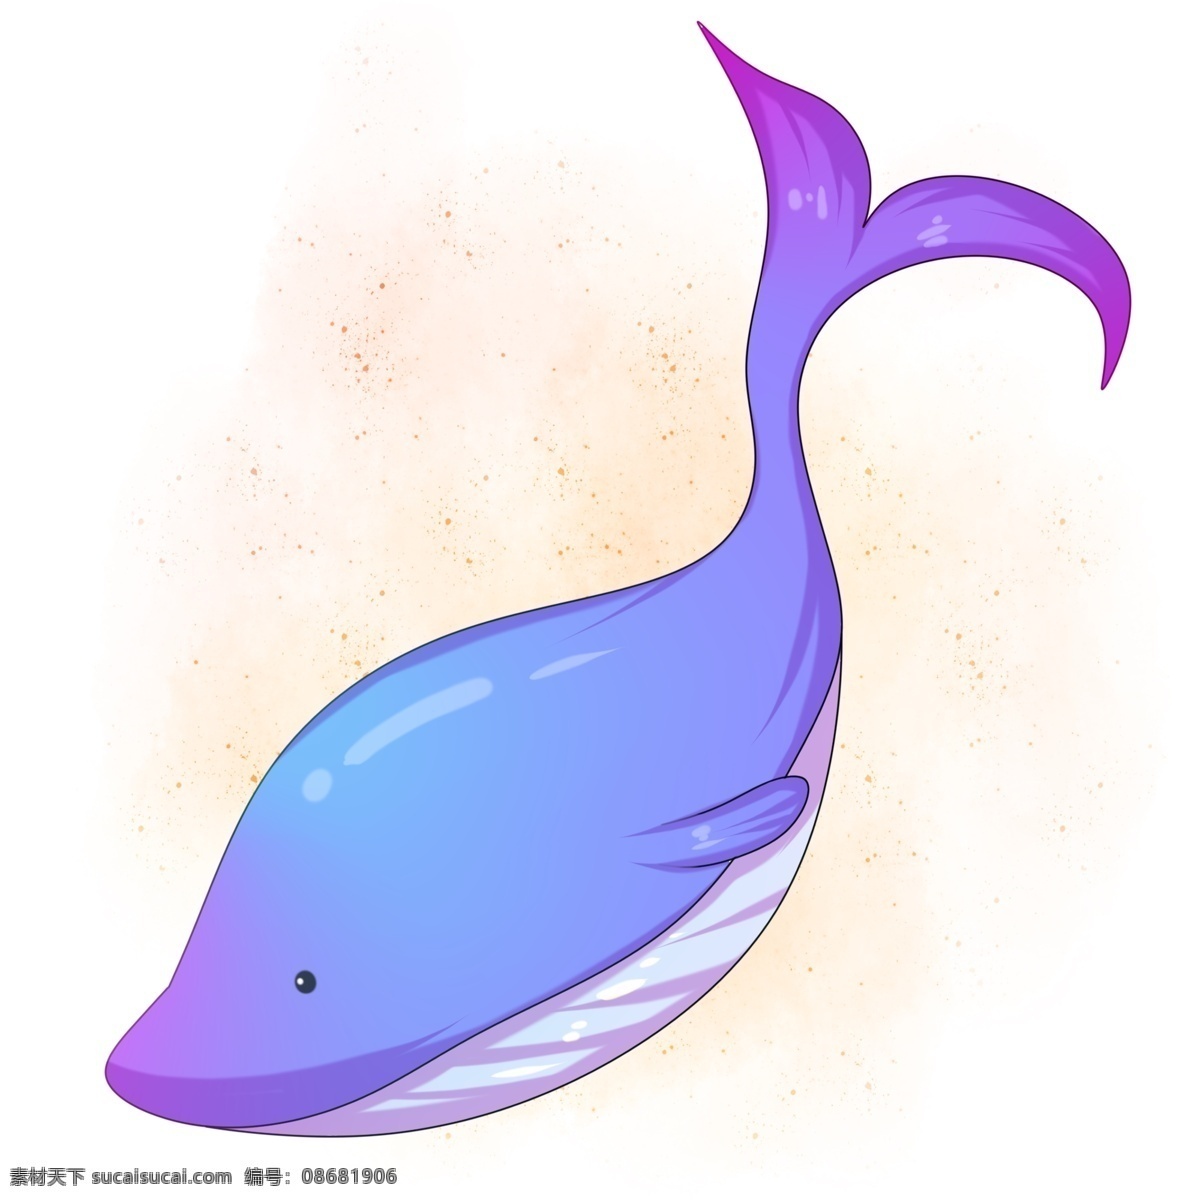 卡通 手绘 蓝色 鲸鱼 游泳 插画 鲸 海洋 大海 哺乳动物 潜水 呼吸 悠闲自在 粉色 梦幻 巨大 可爱 卡通手绘